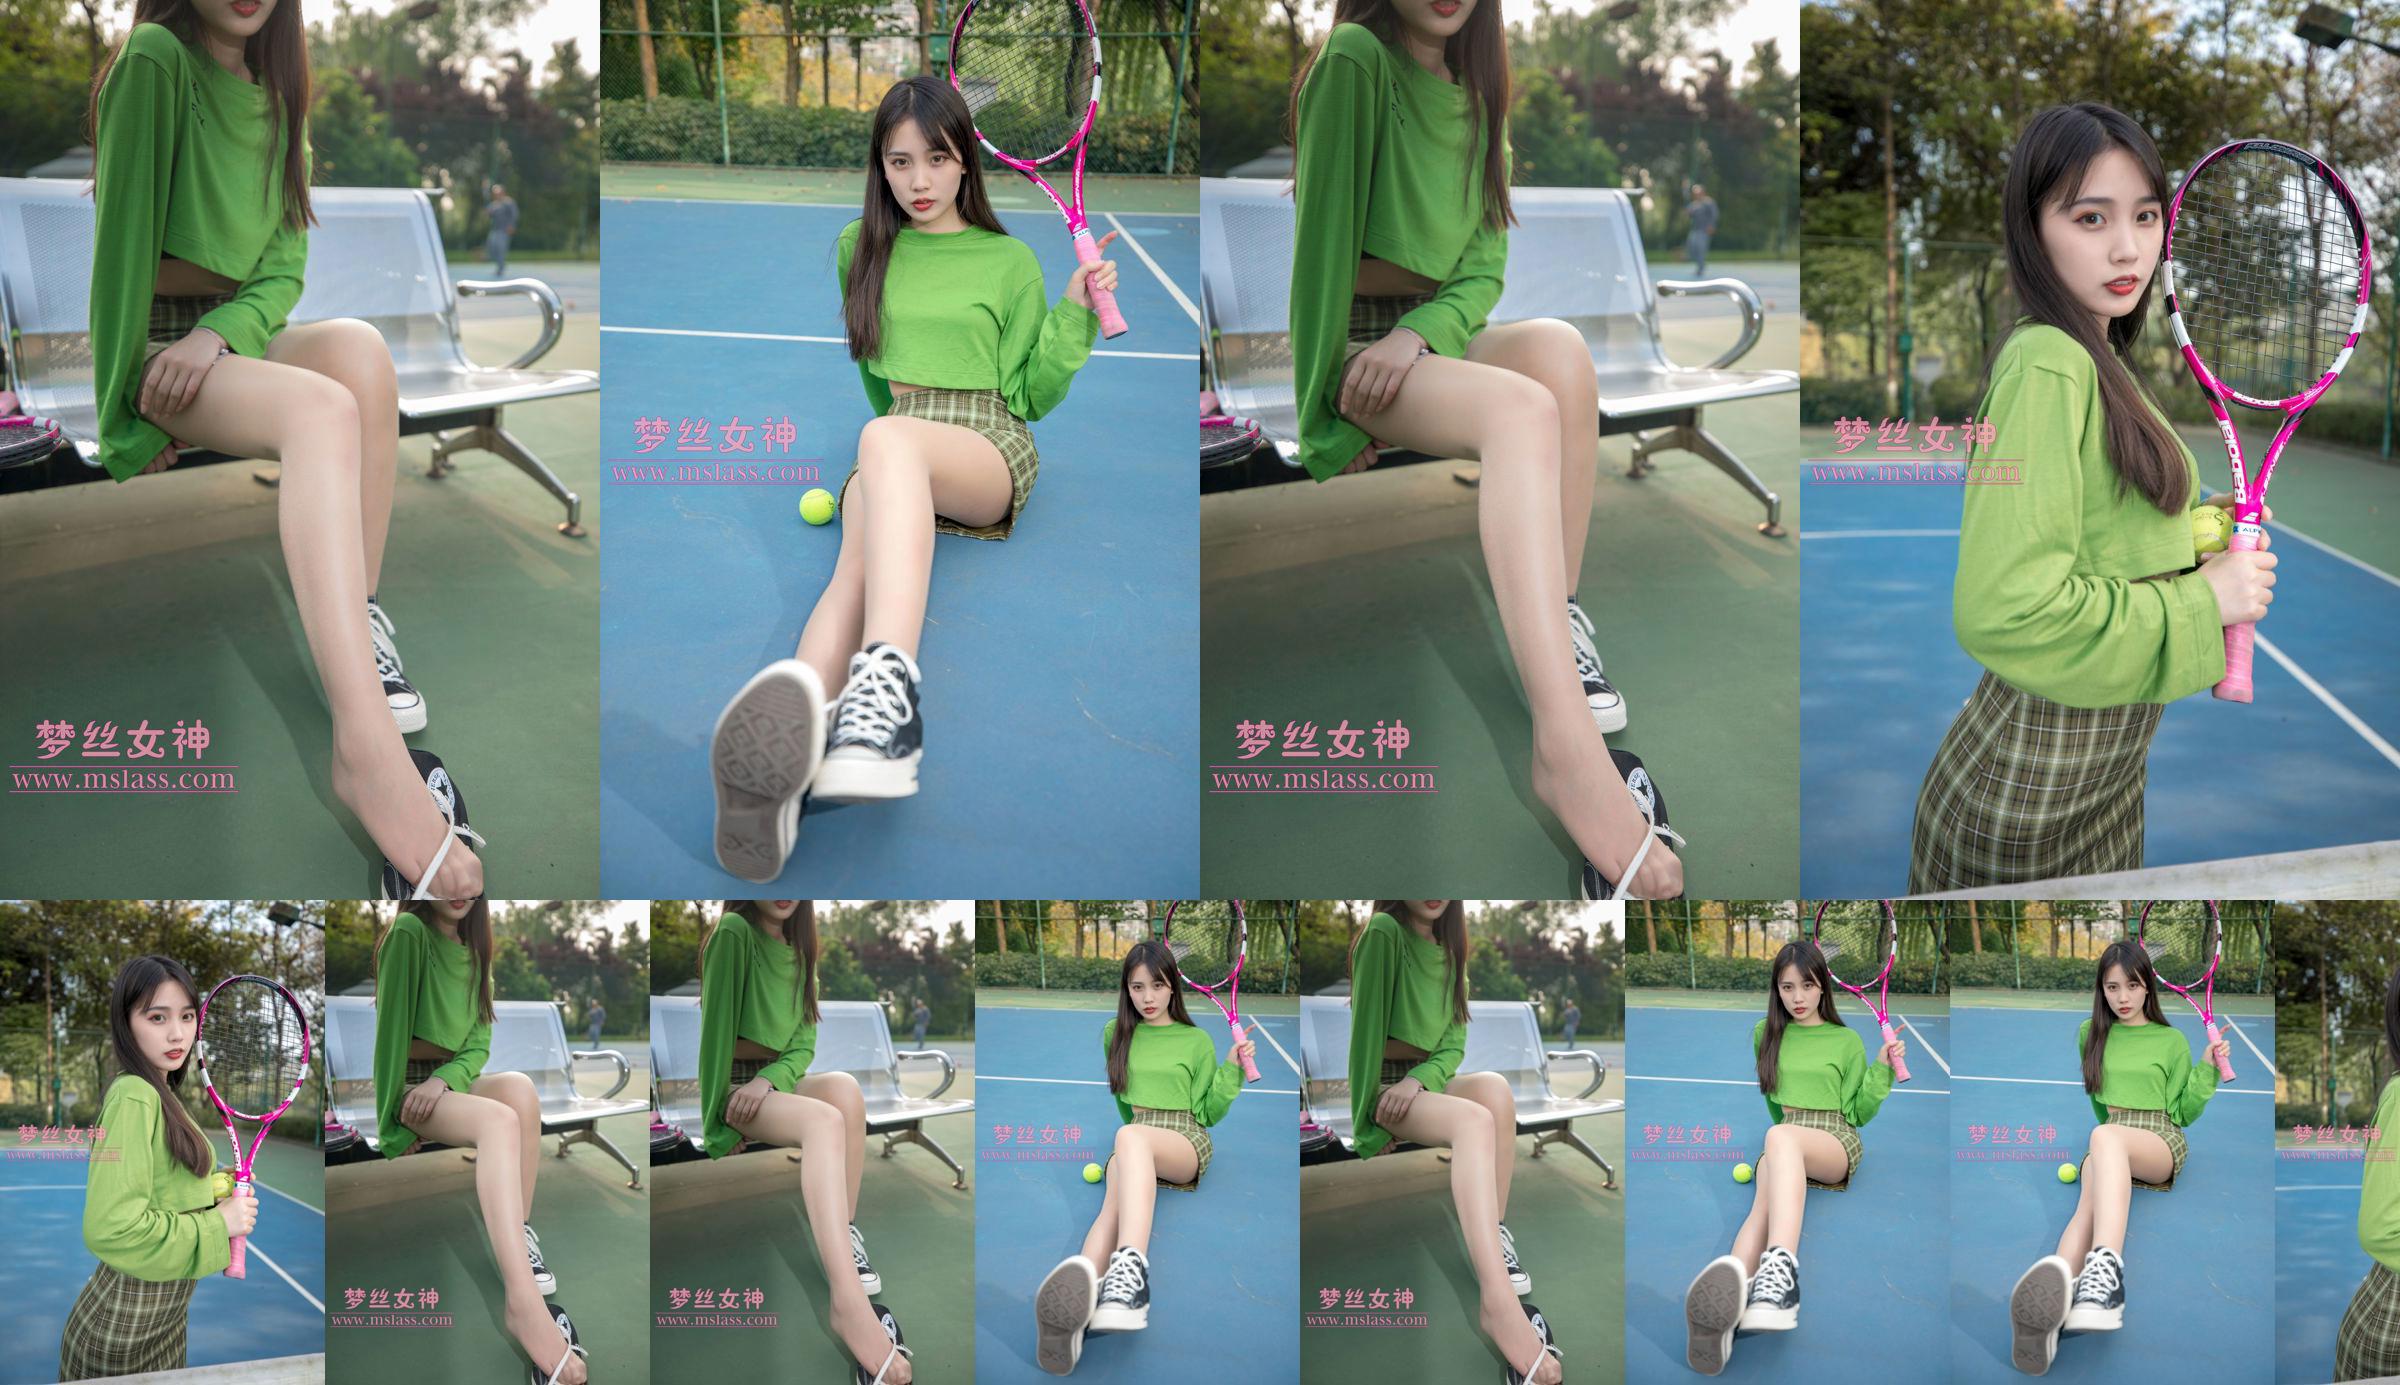 [เทพธิดาแห่งความฝัน MSLASS] Xiang Xuan Tennis Girl No.2b8b9f หน้า 3